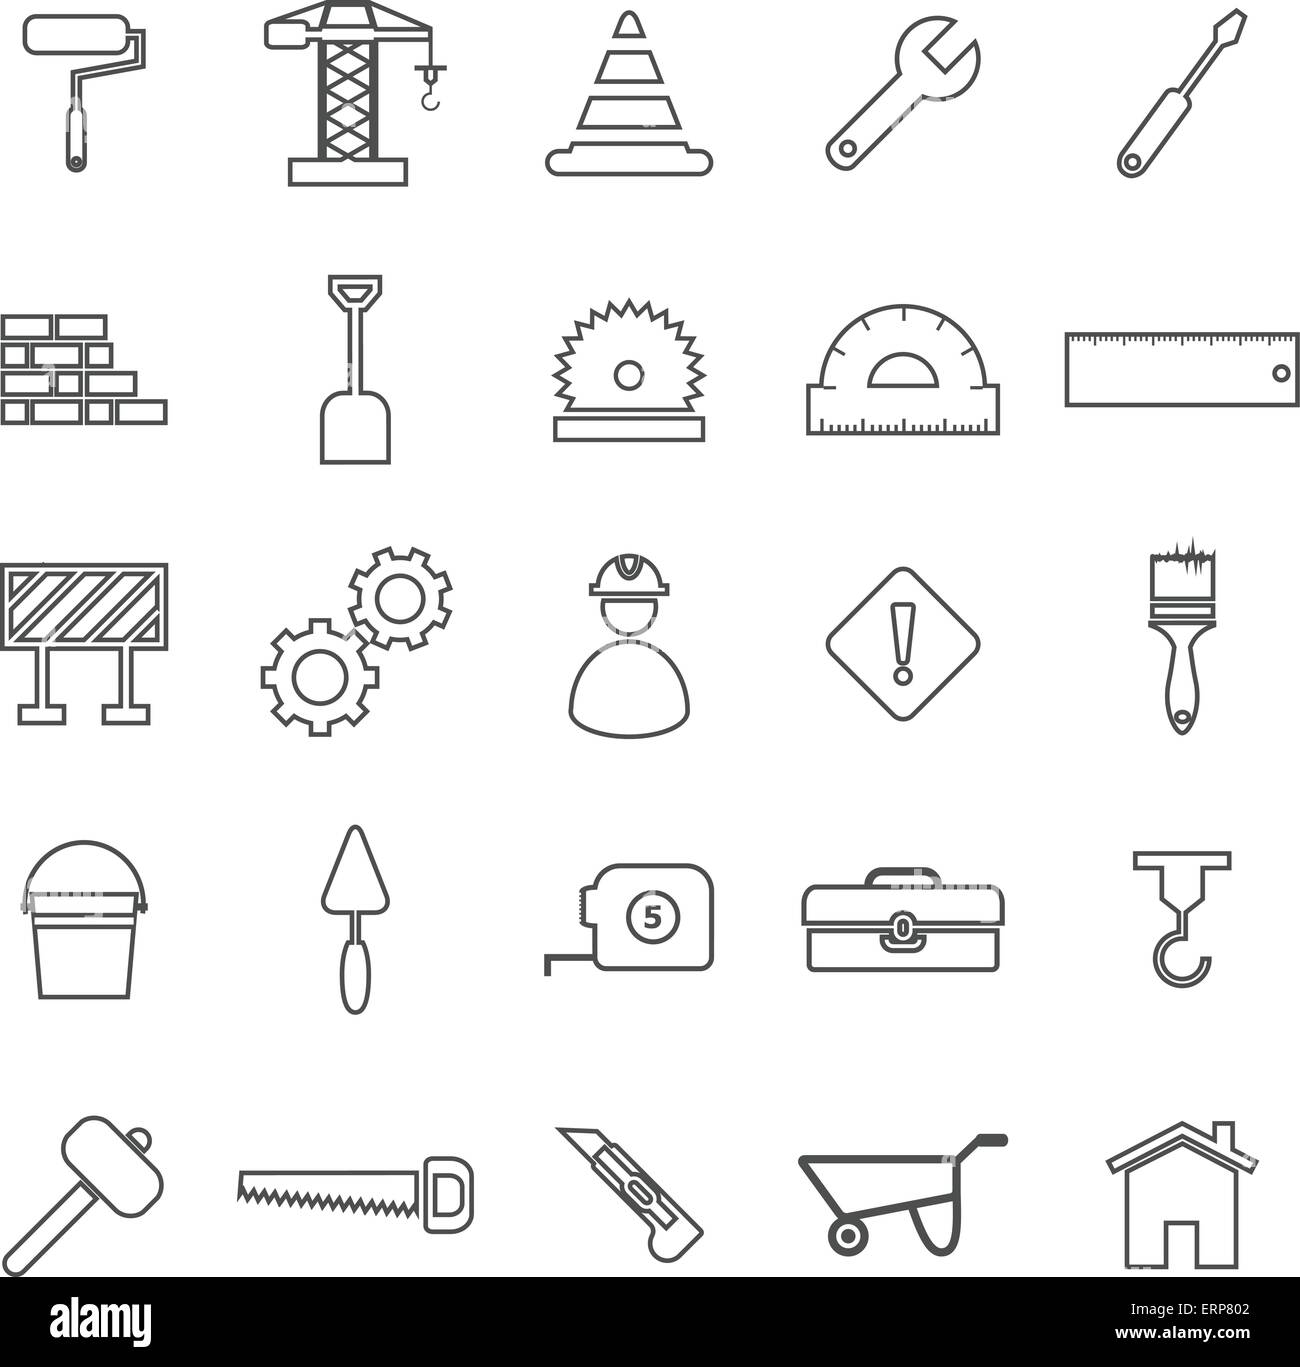 Linea di costruzione le icone su sfondo bianco, vettore di stock Illustrazione Vettoriale